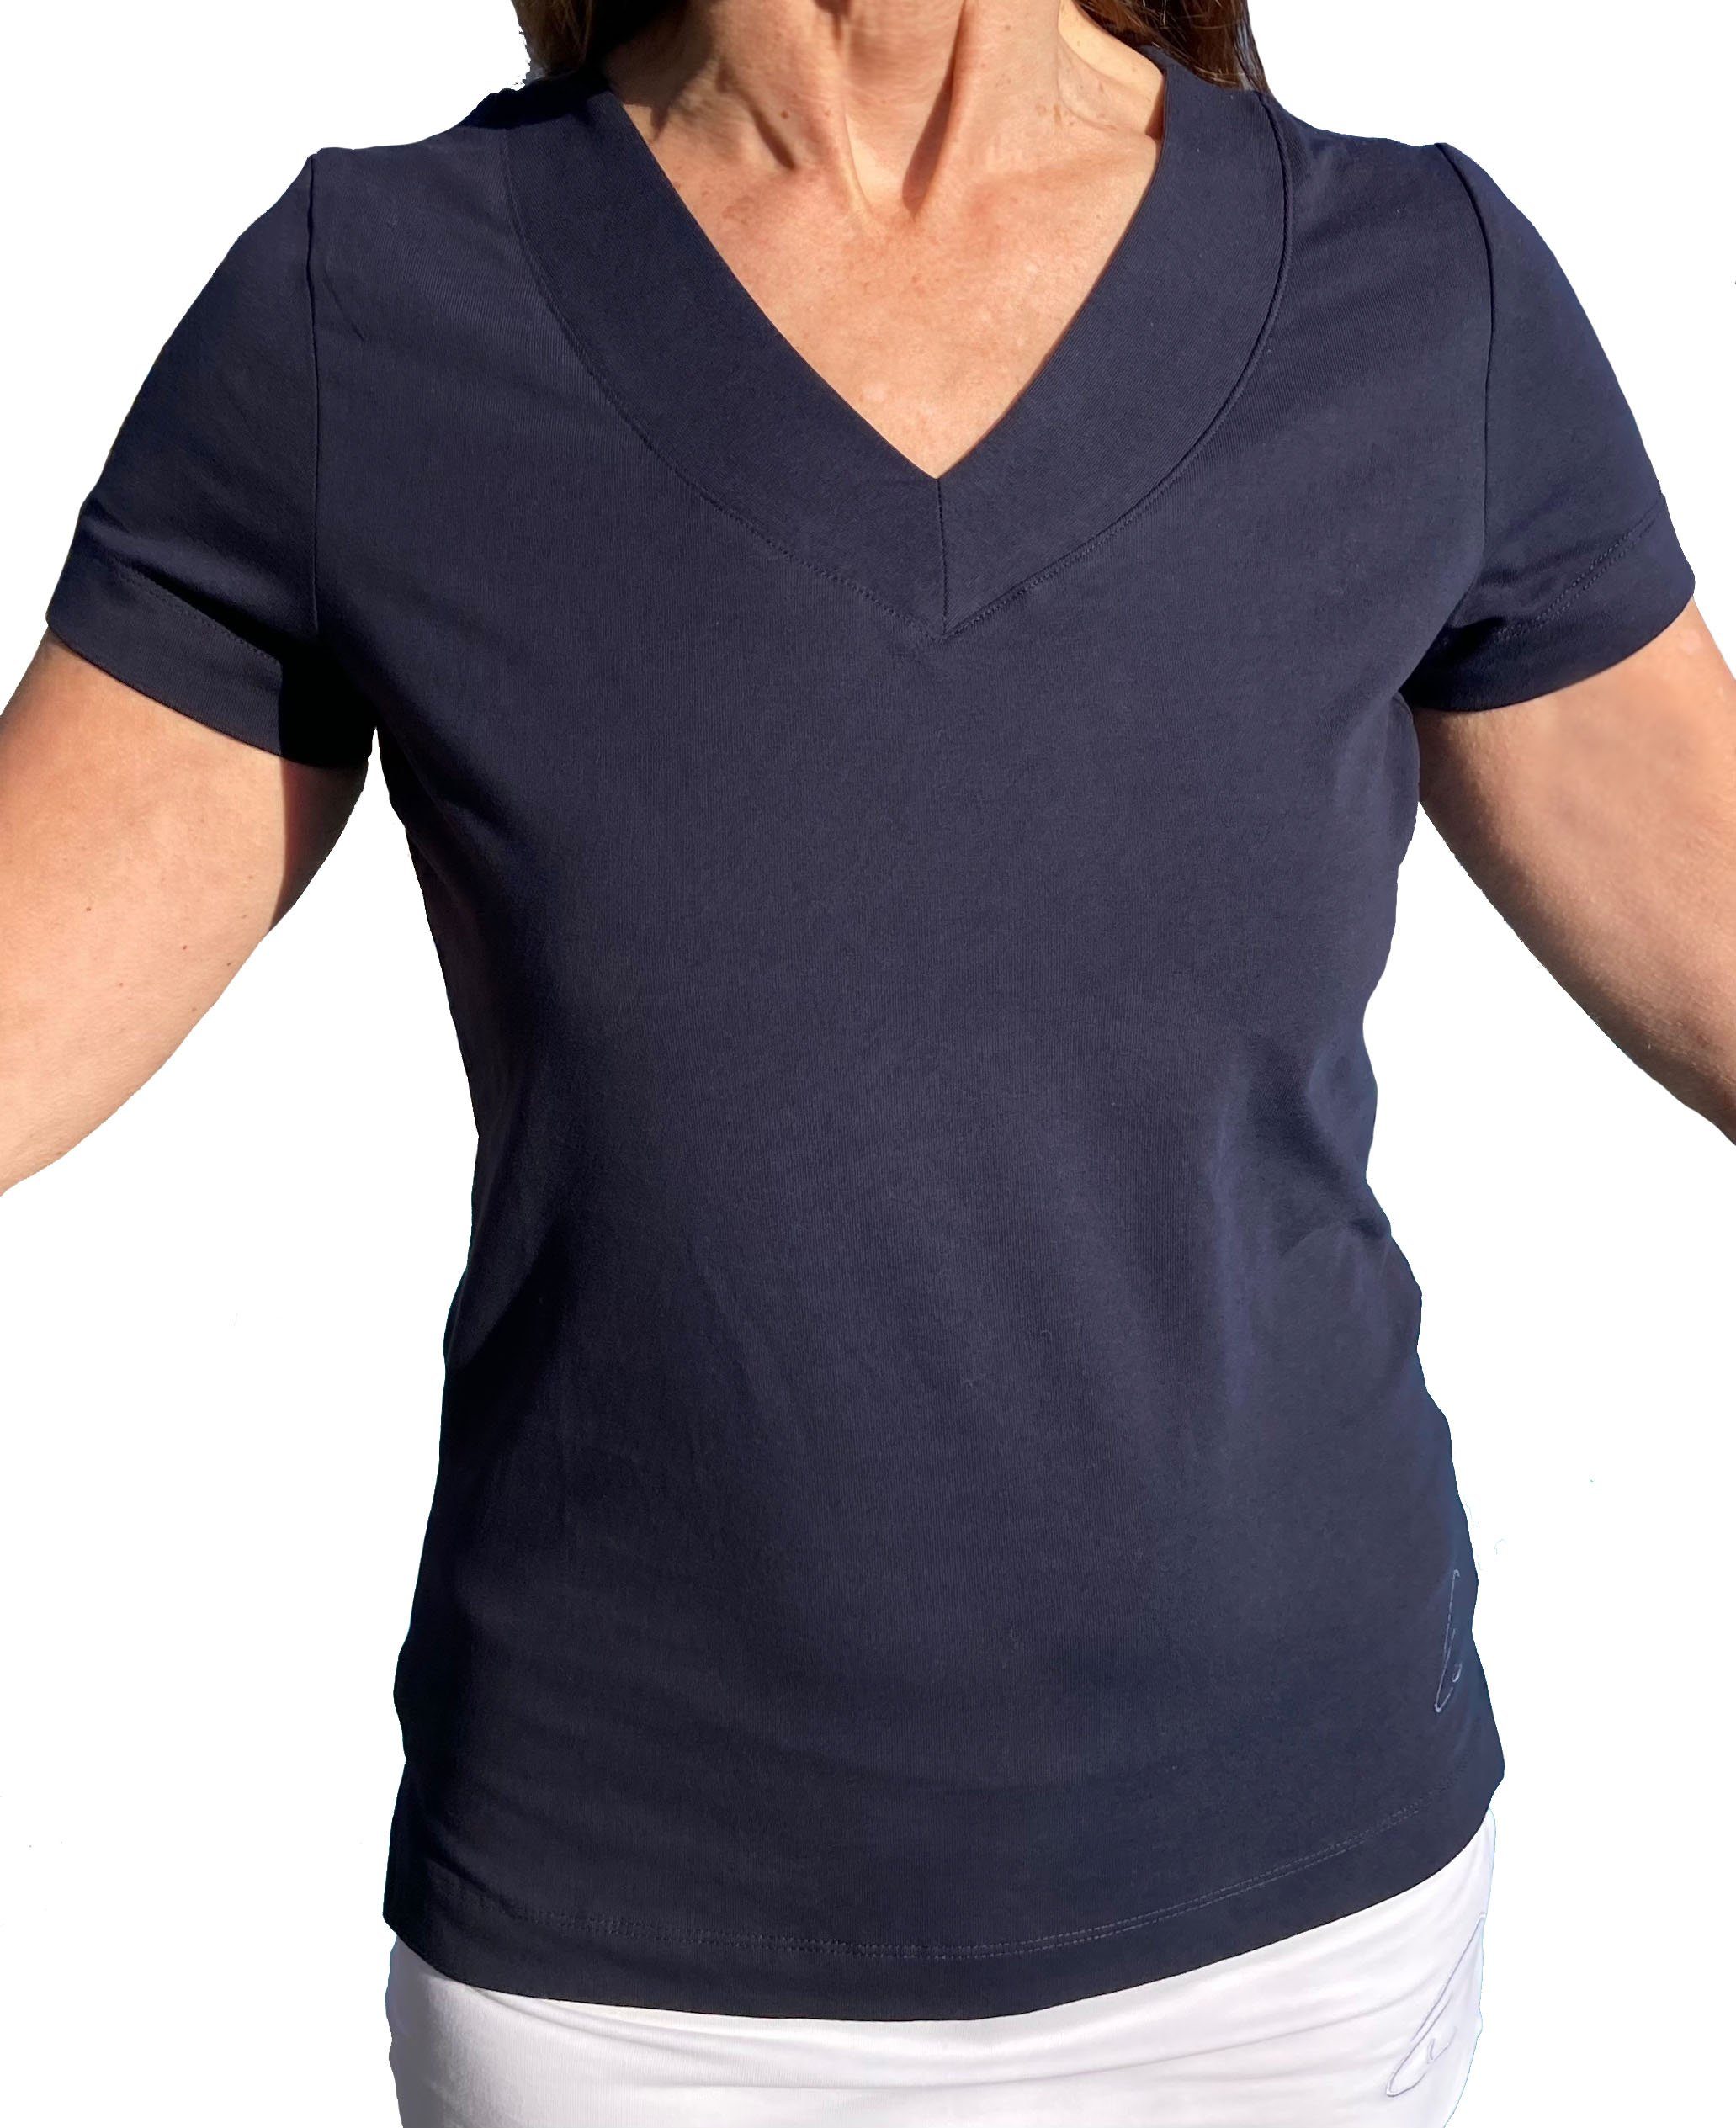 ESPARTO Yogashirt Yoga V-Shirt Farishta V-Shirt kurzen unten Bio-Baumwolle in Ärmeln, mit Nachtblau geschlitzt